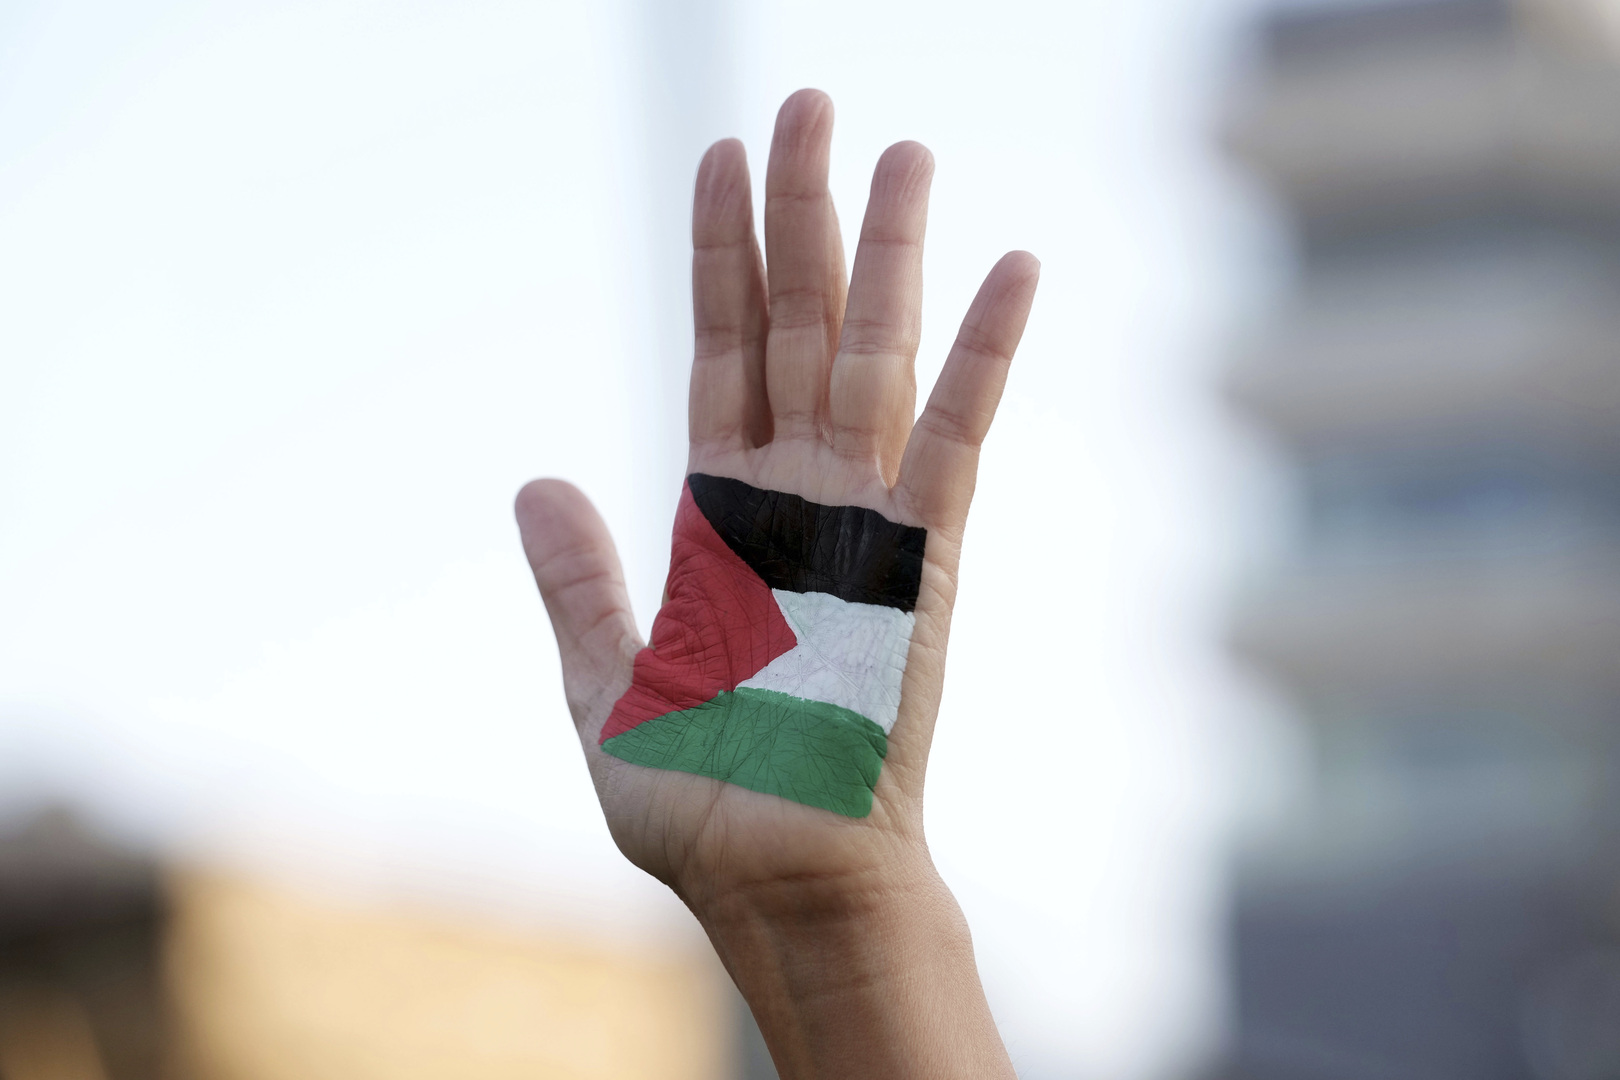 بعد تعليقه إضرابا عن الطعام لـ111 يوما.. ابنة الأسير الفلسطيني خليل عواودة توجه رسالة مؤثرة (فيديو)